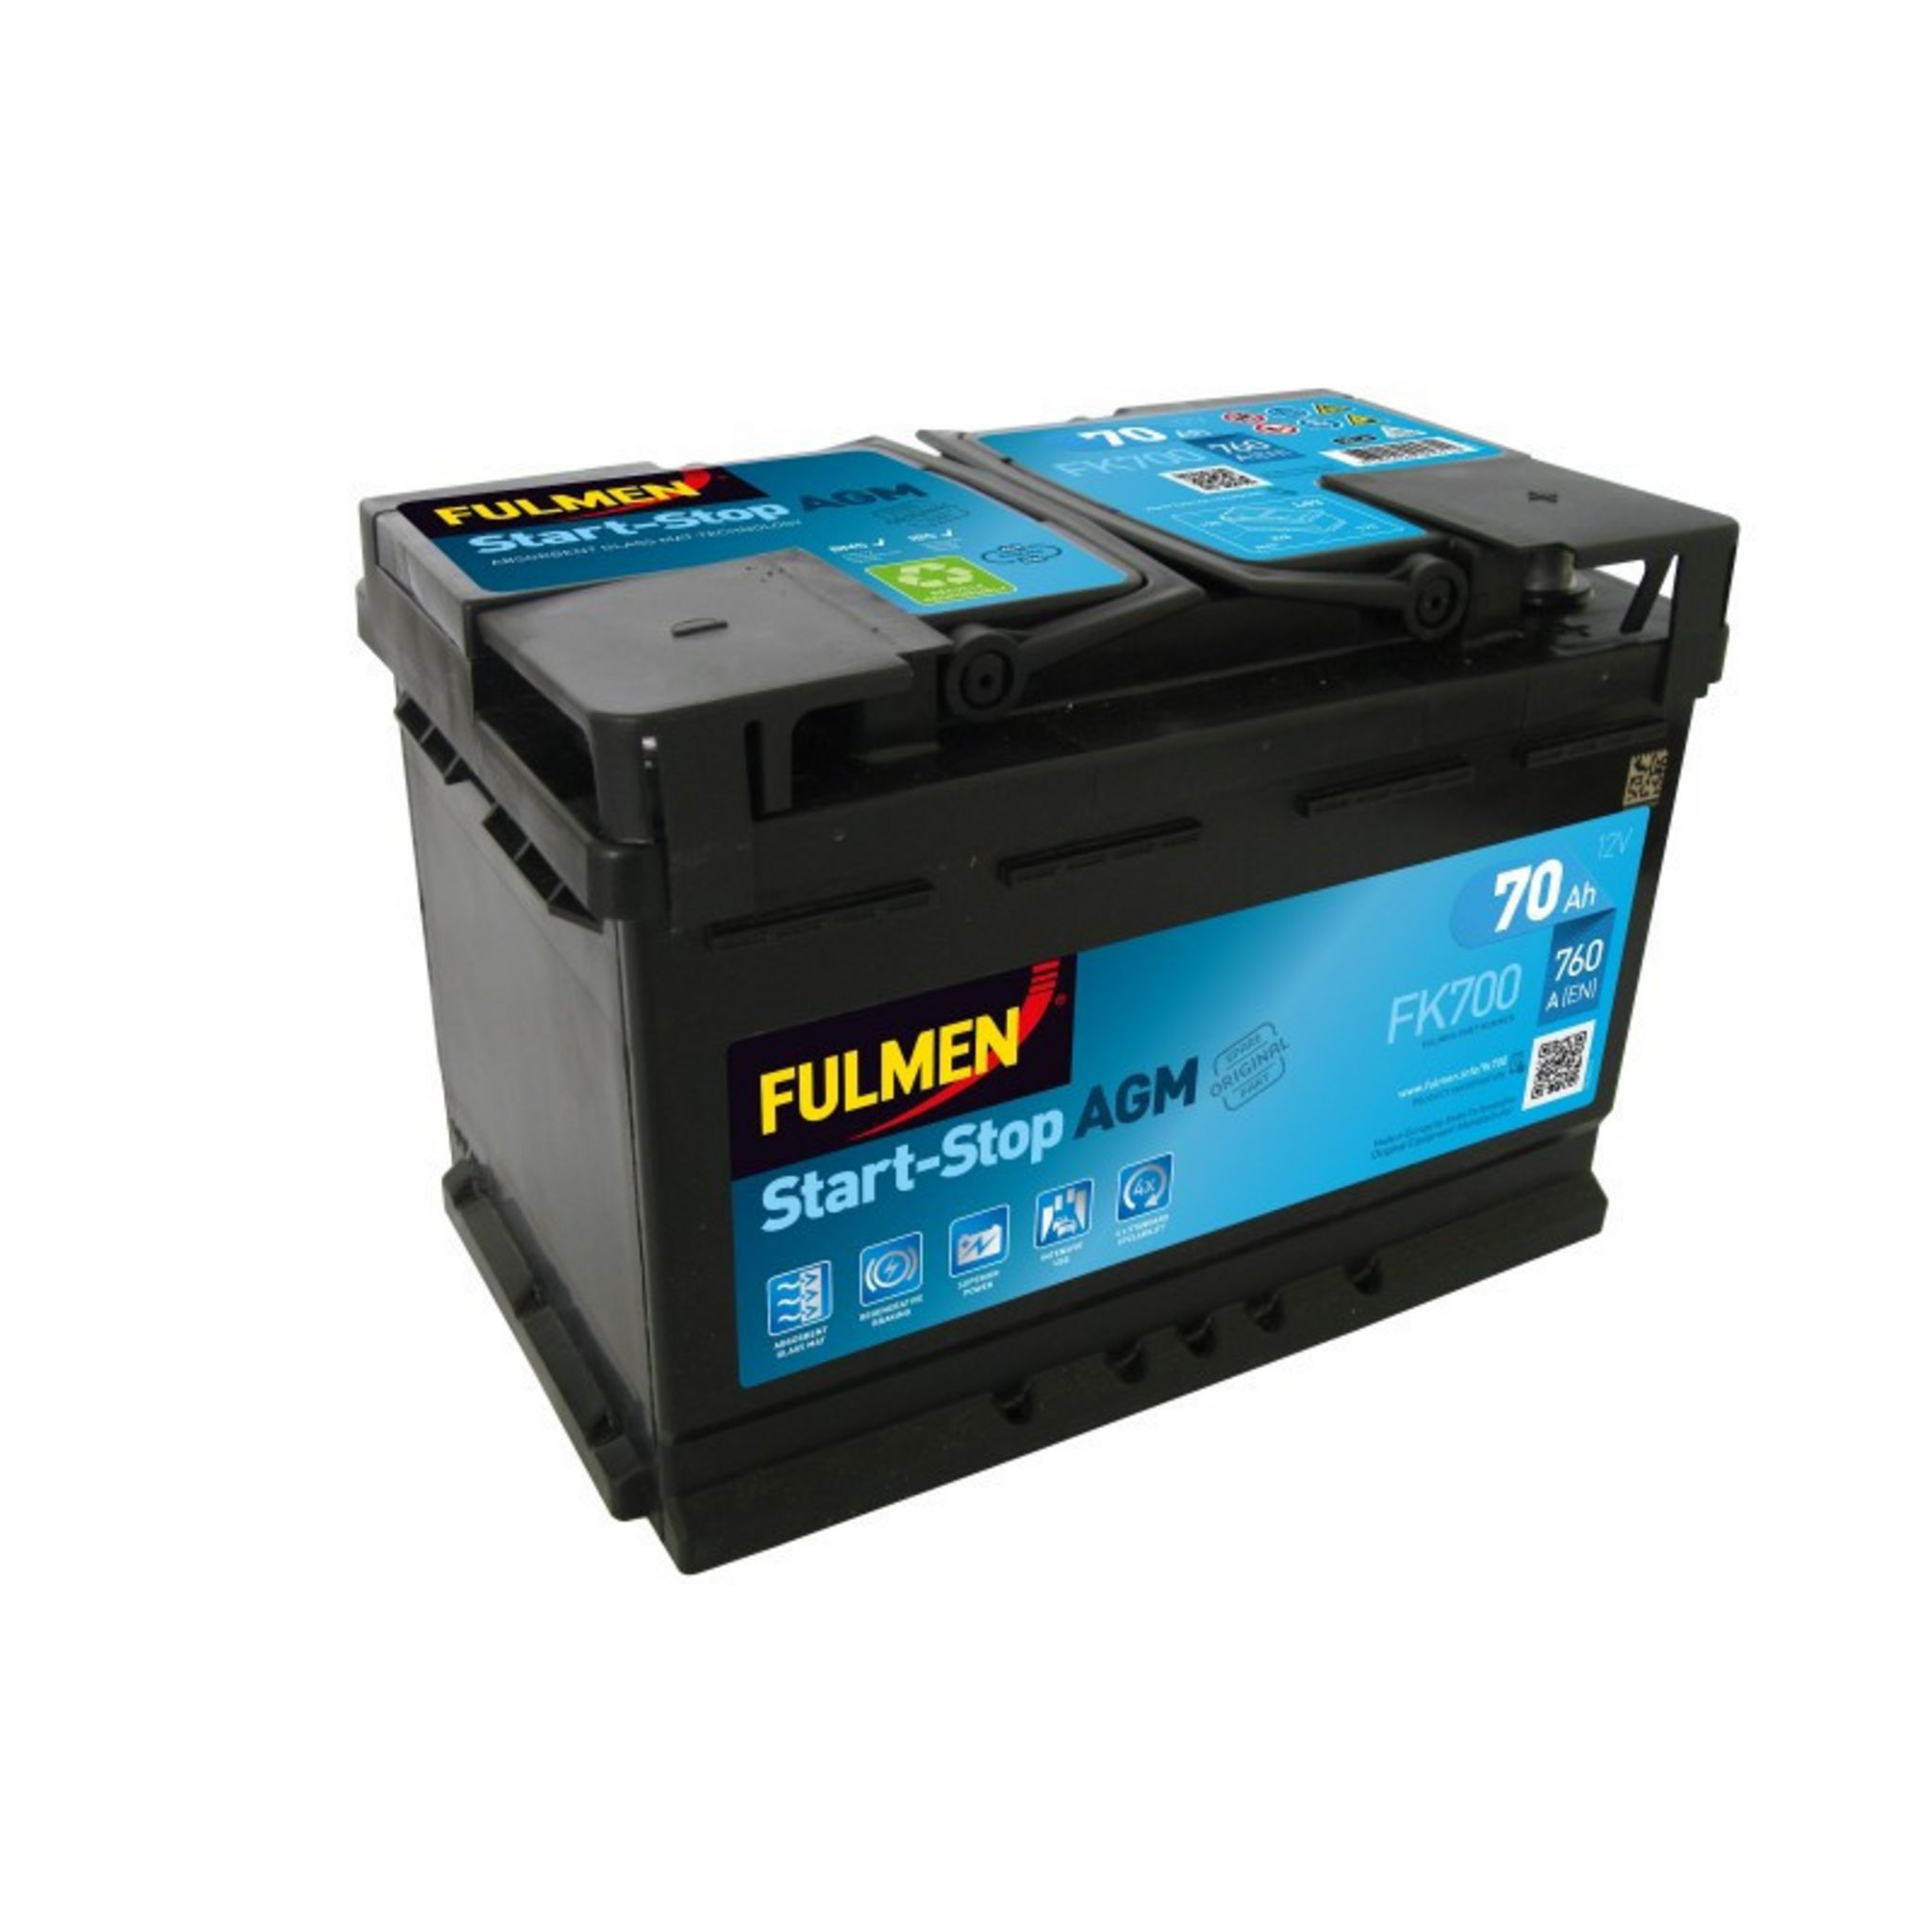 FULMEN Batterie Fulmen AGM Start And Stop FK700 12V 70ah 760A pas cher 